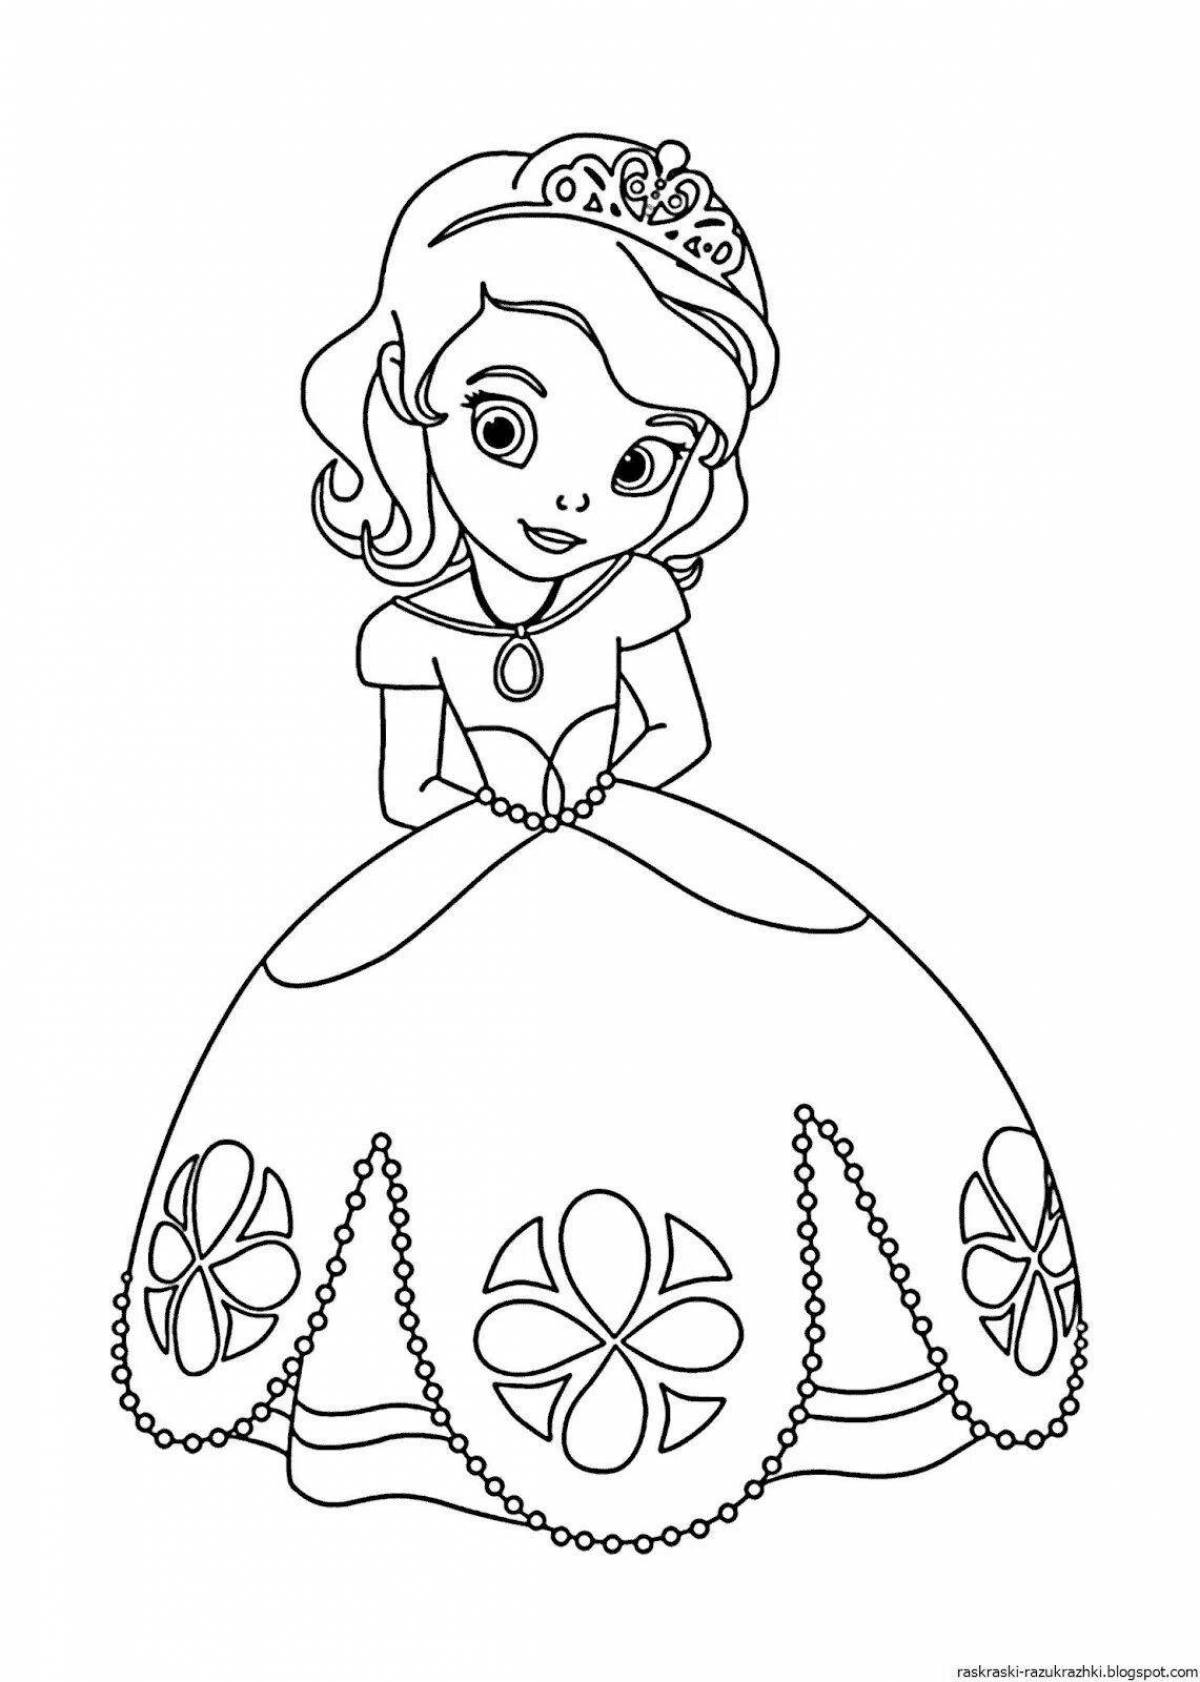 Раскраски Принцессы Диснея для девочек распечатать в красивых платьях бесплатно в формате а4